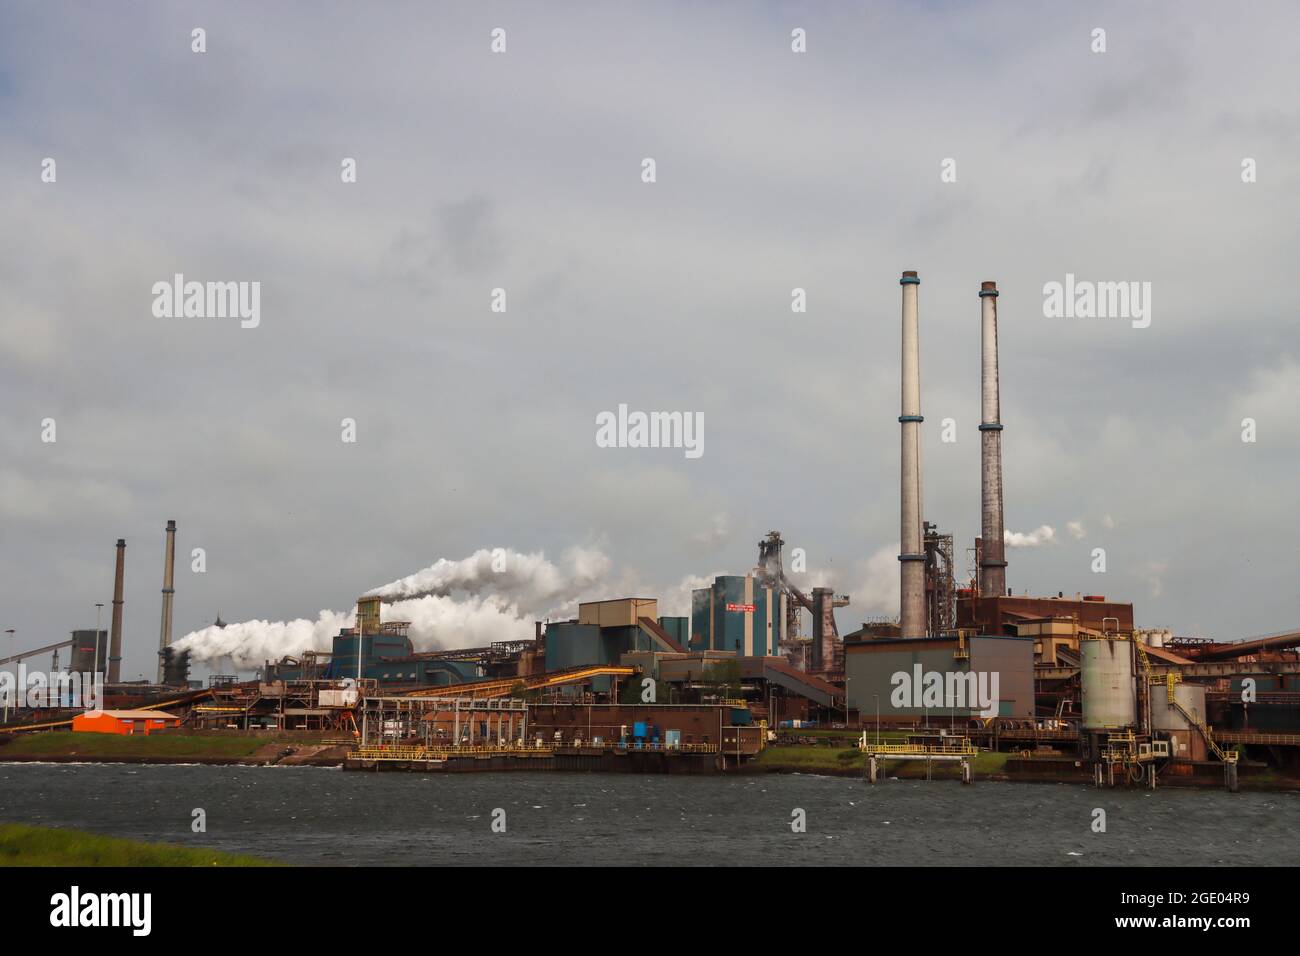 Tata Steel: Tata Steel divide a Países Bajos: ¿medio ambiente o